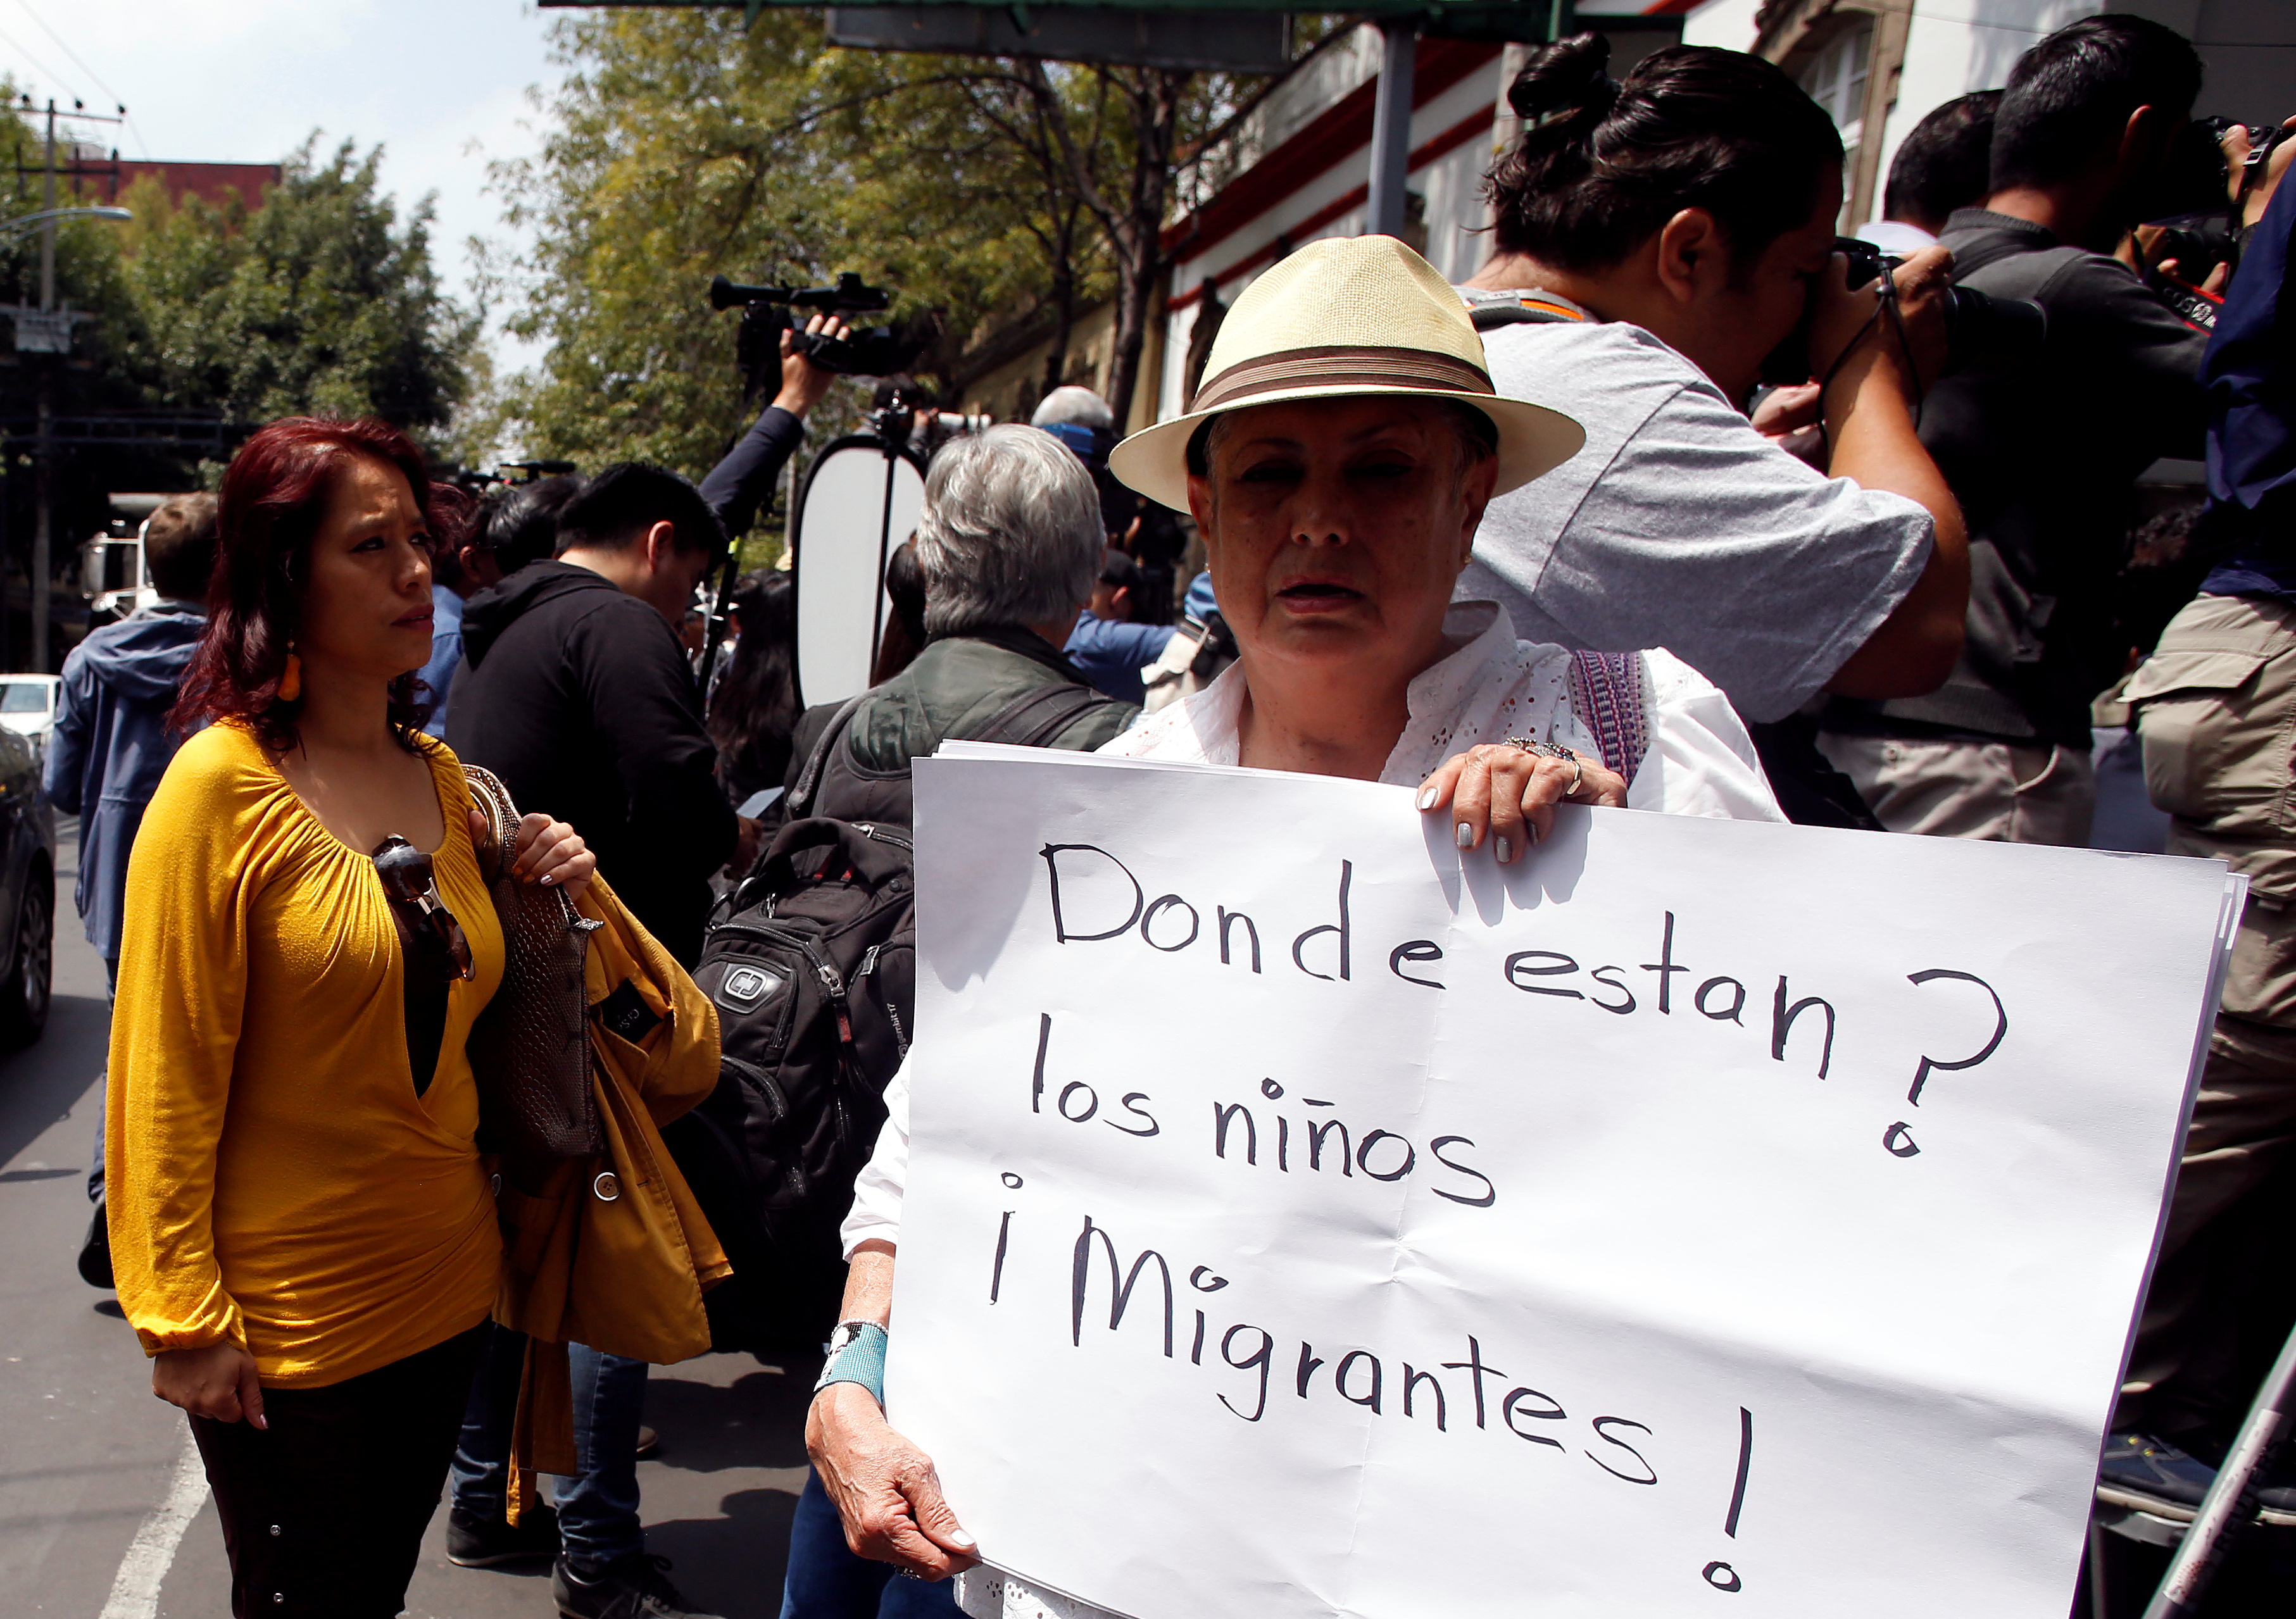 Vence plazo para reunificación de familias migrantes en EEUU